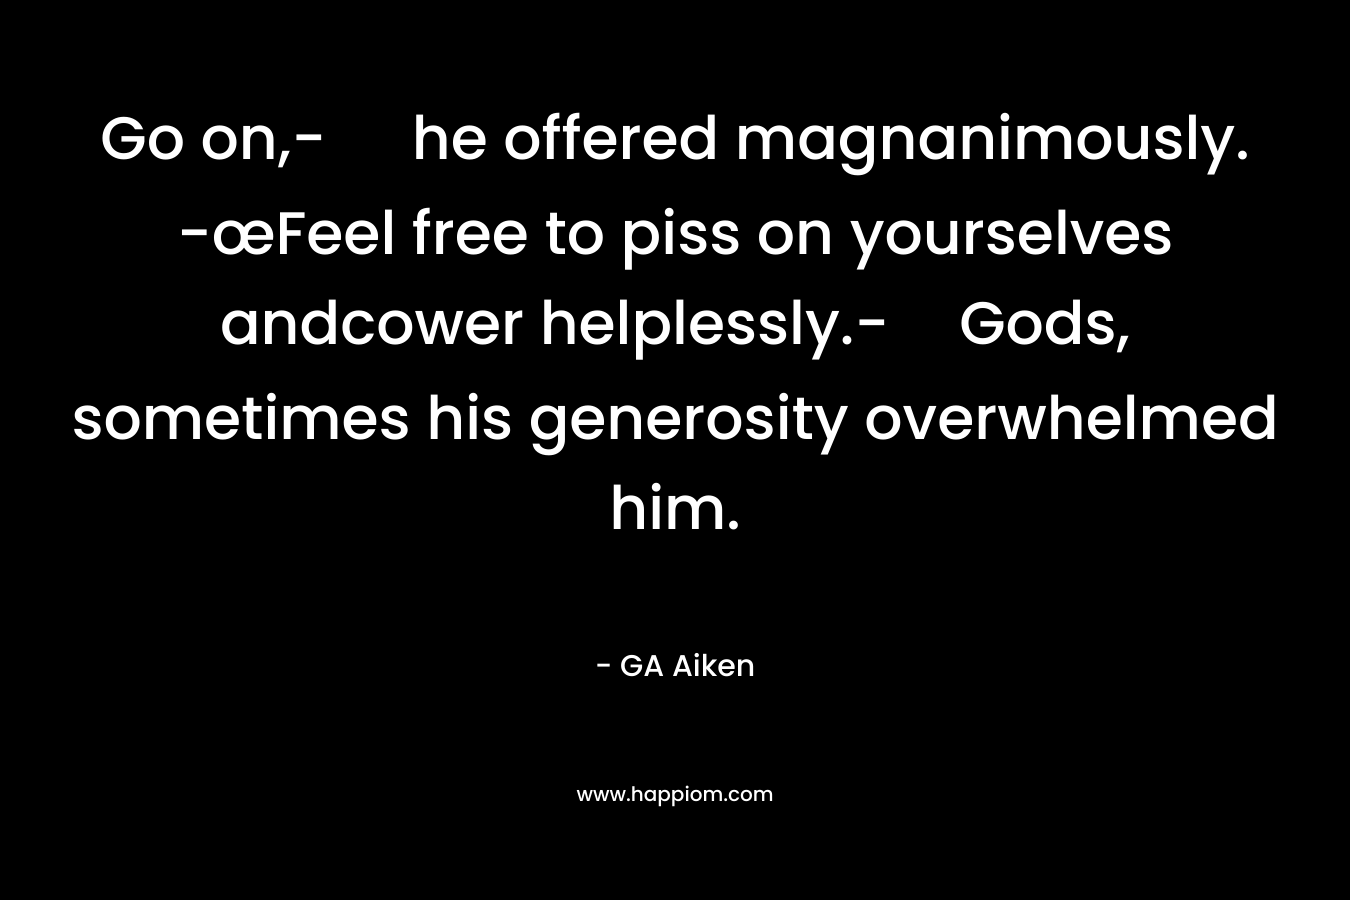 Go on,- he offered magnanimously. -œFeel free to piss on yourselves andcower helplessly.-Gods, sometimes his generosity overwhelmed him.